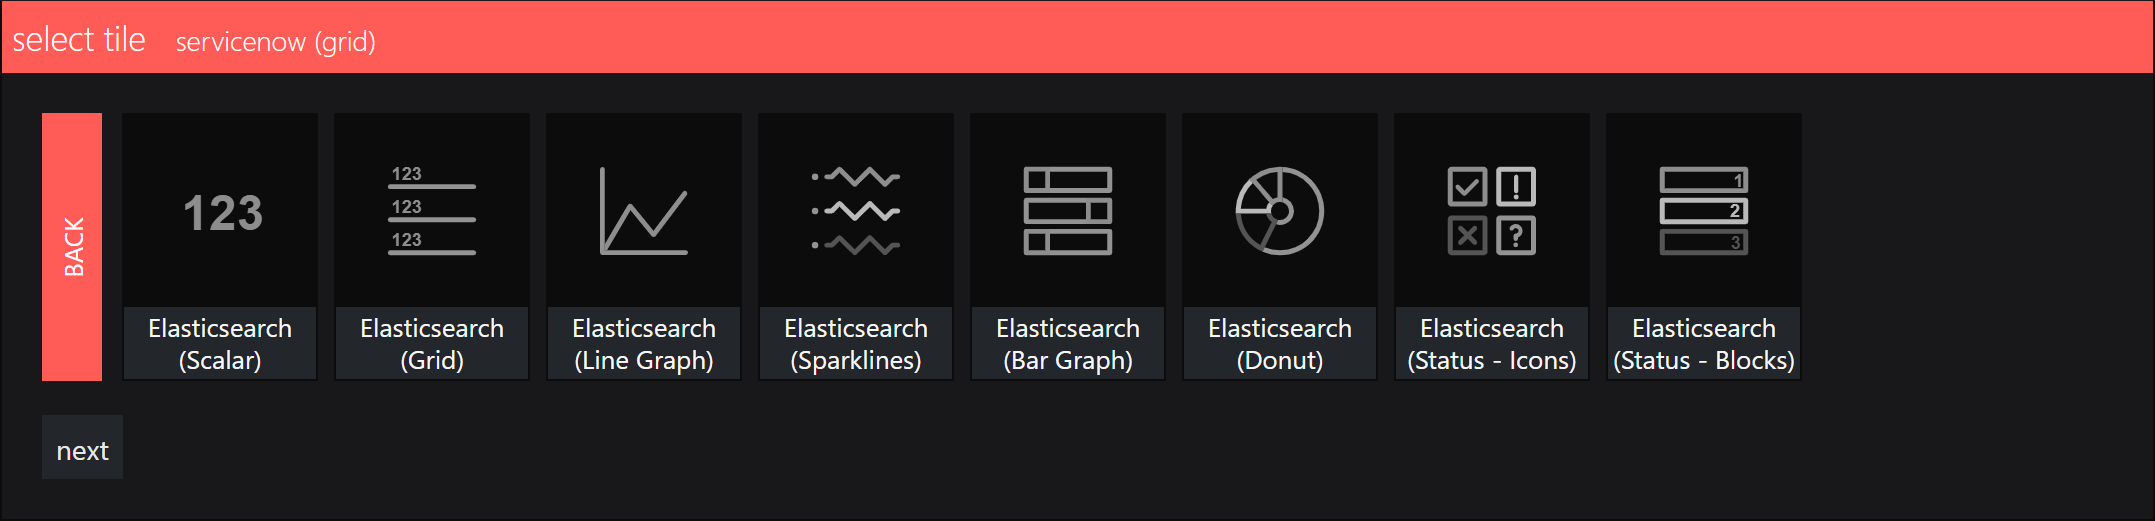 SquaredUp Integrations - elasticsearch select a visual